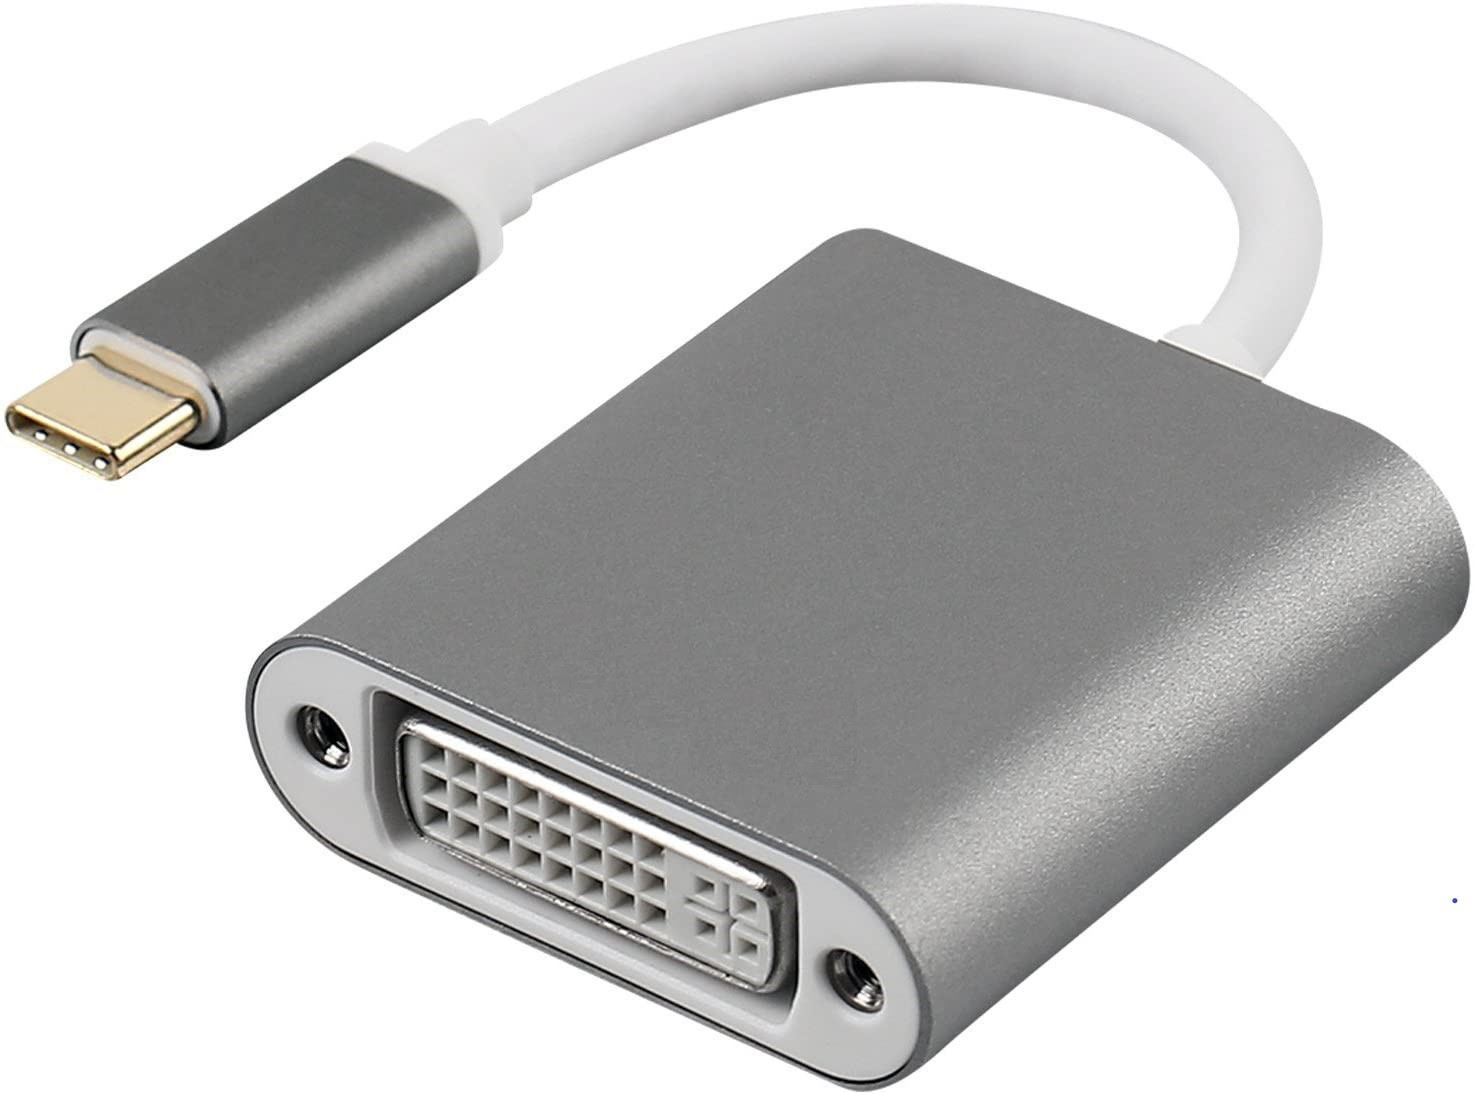 Adaptador conversor USB C para DVI ful HD USB 3.1 para DVI